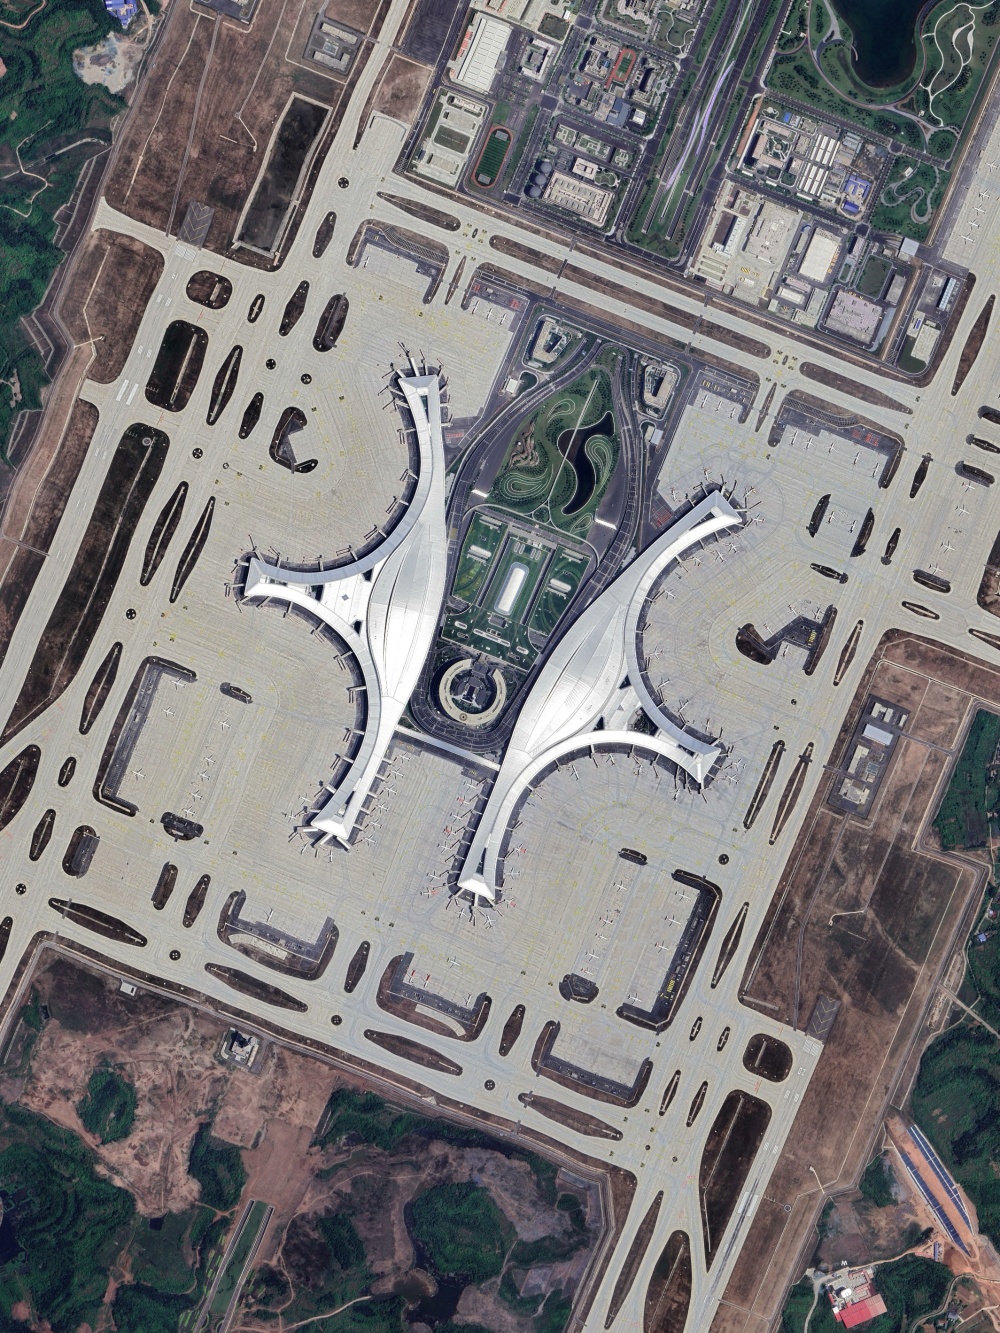 成都天府国际机场航拍图片